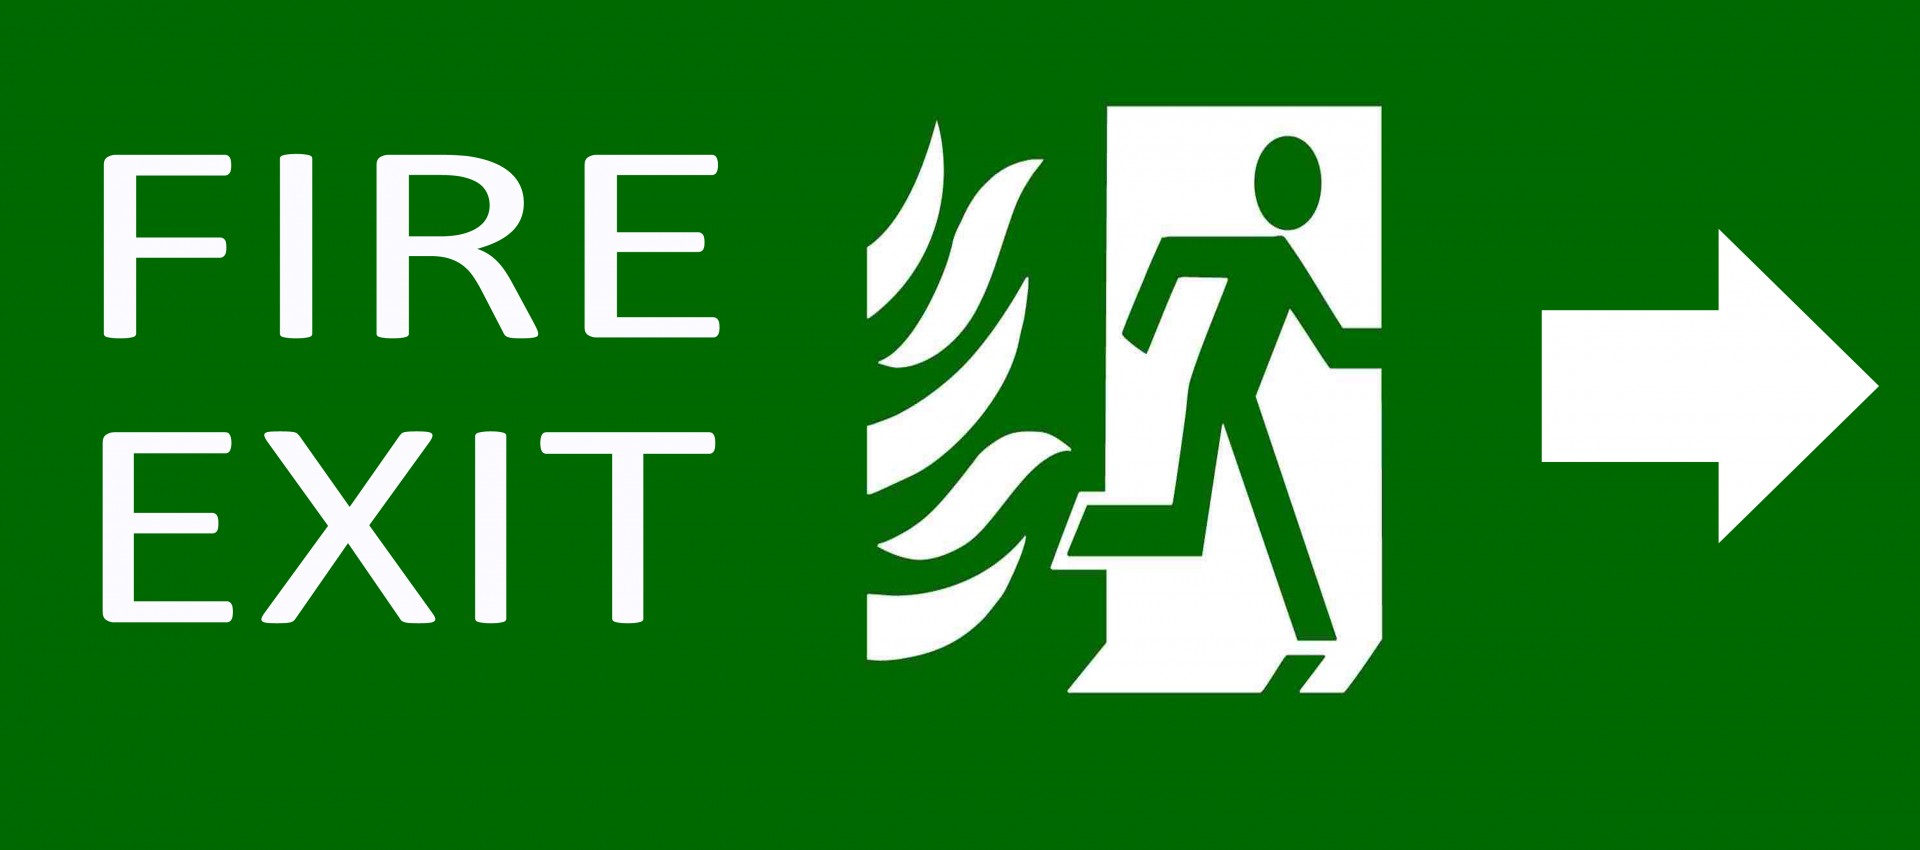 Grüne Ausfahrt Notfall Zeichen auf weiße